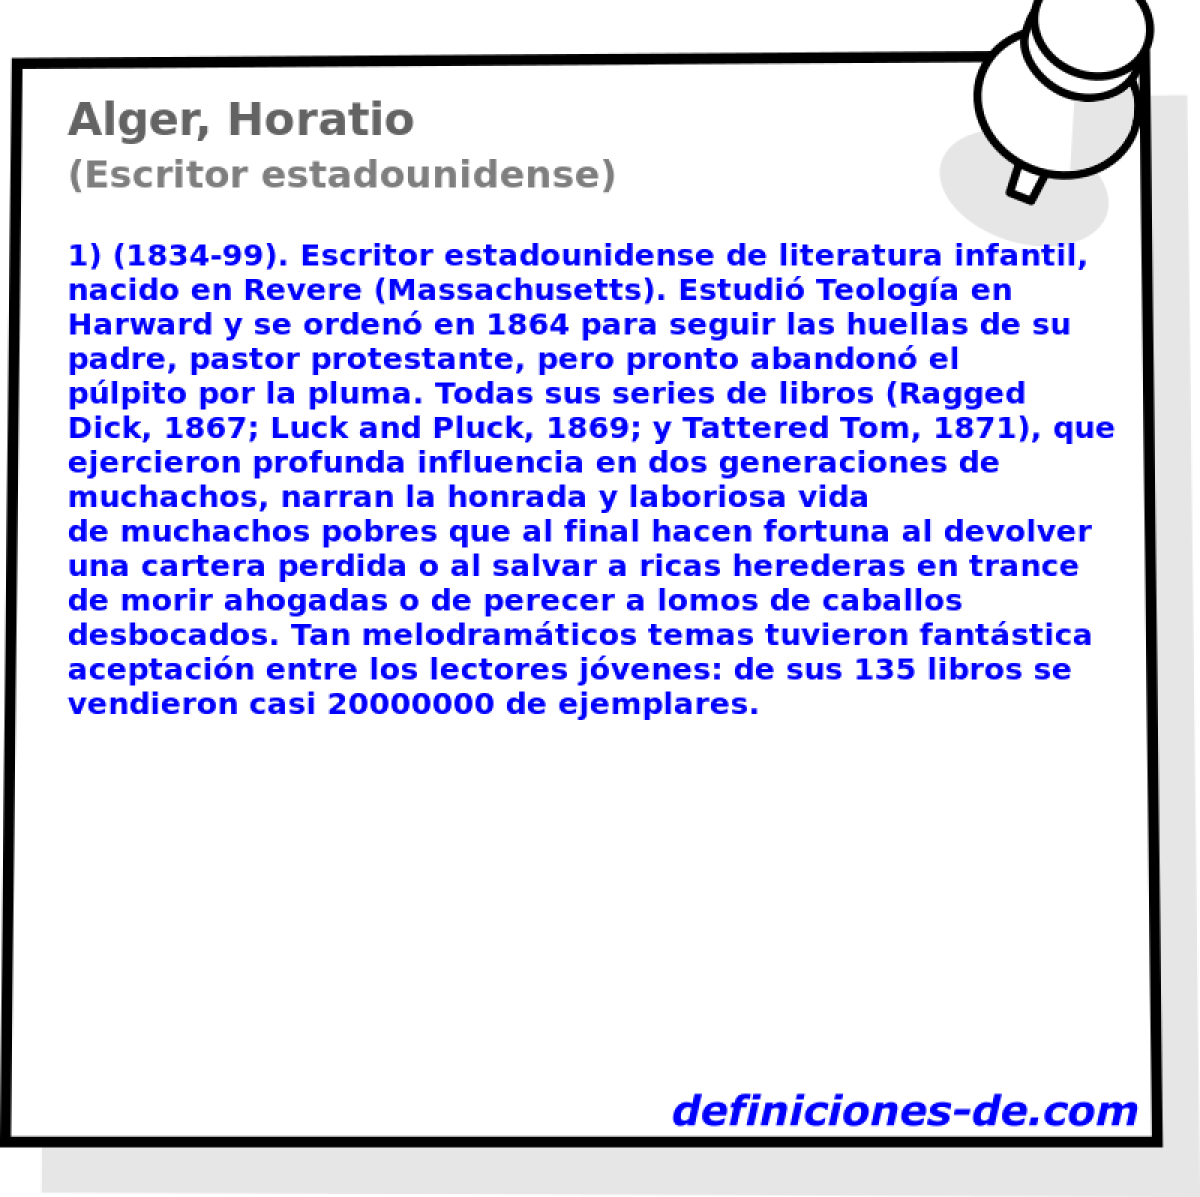 Alger, Horatio (Escritor estadounidense)